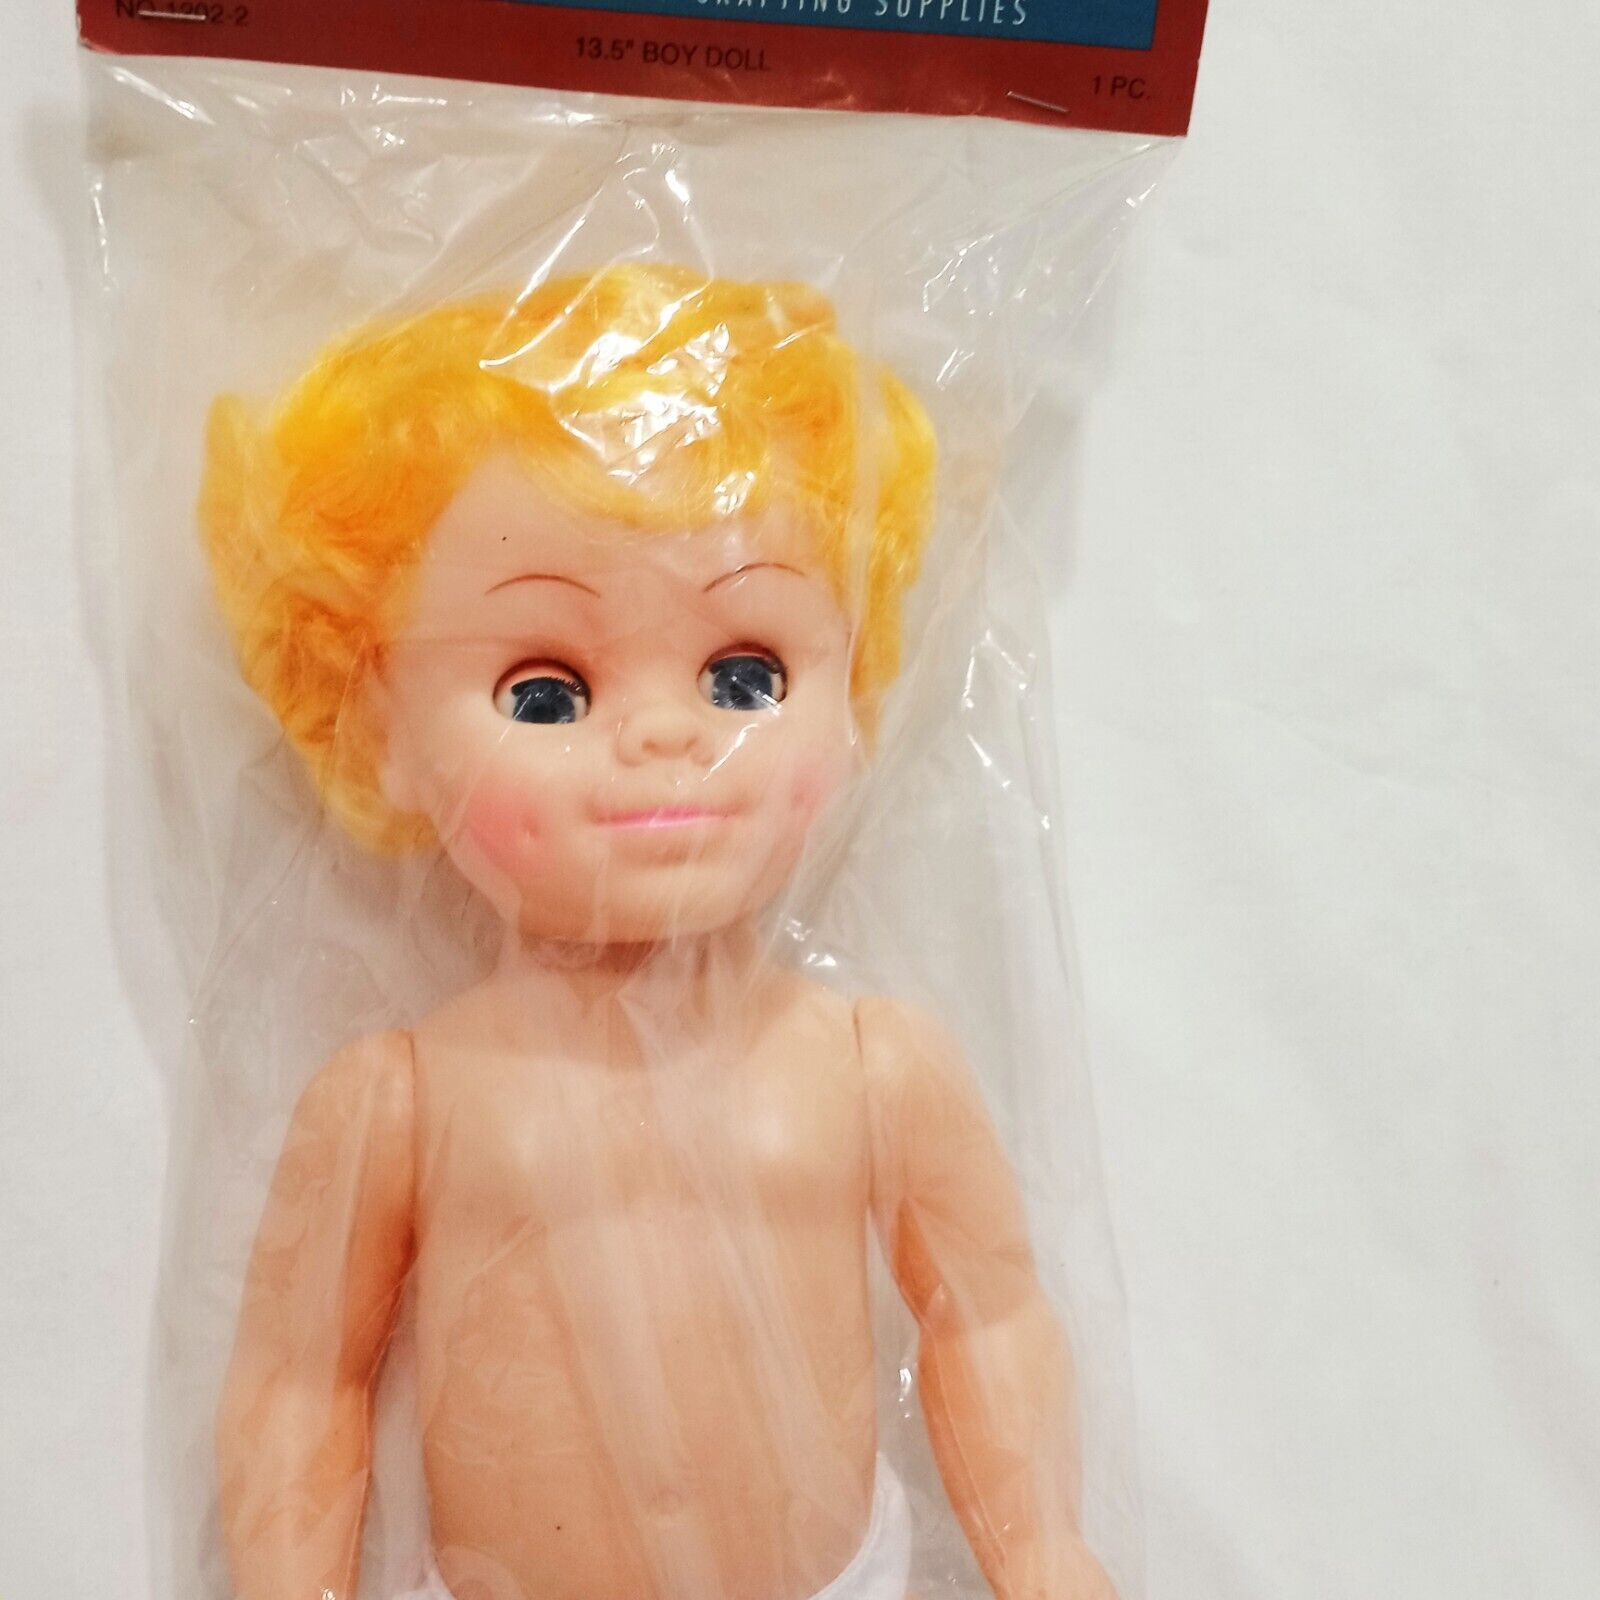 Boy Doll Body Yellow Hair 